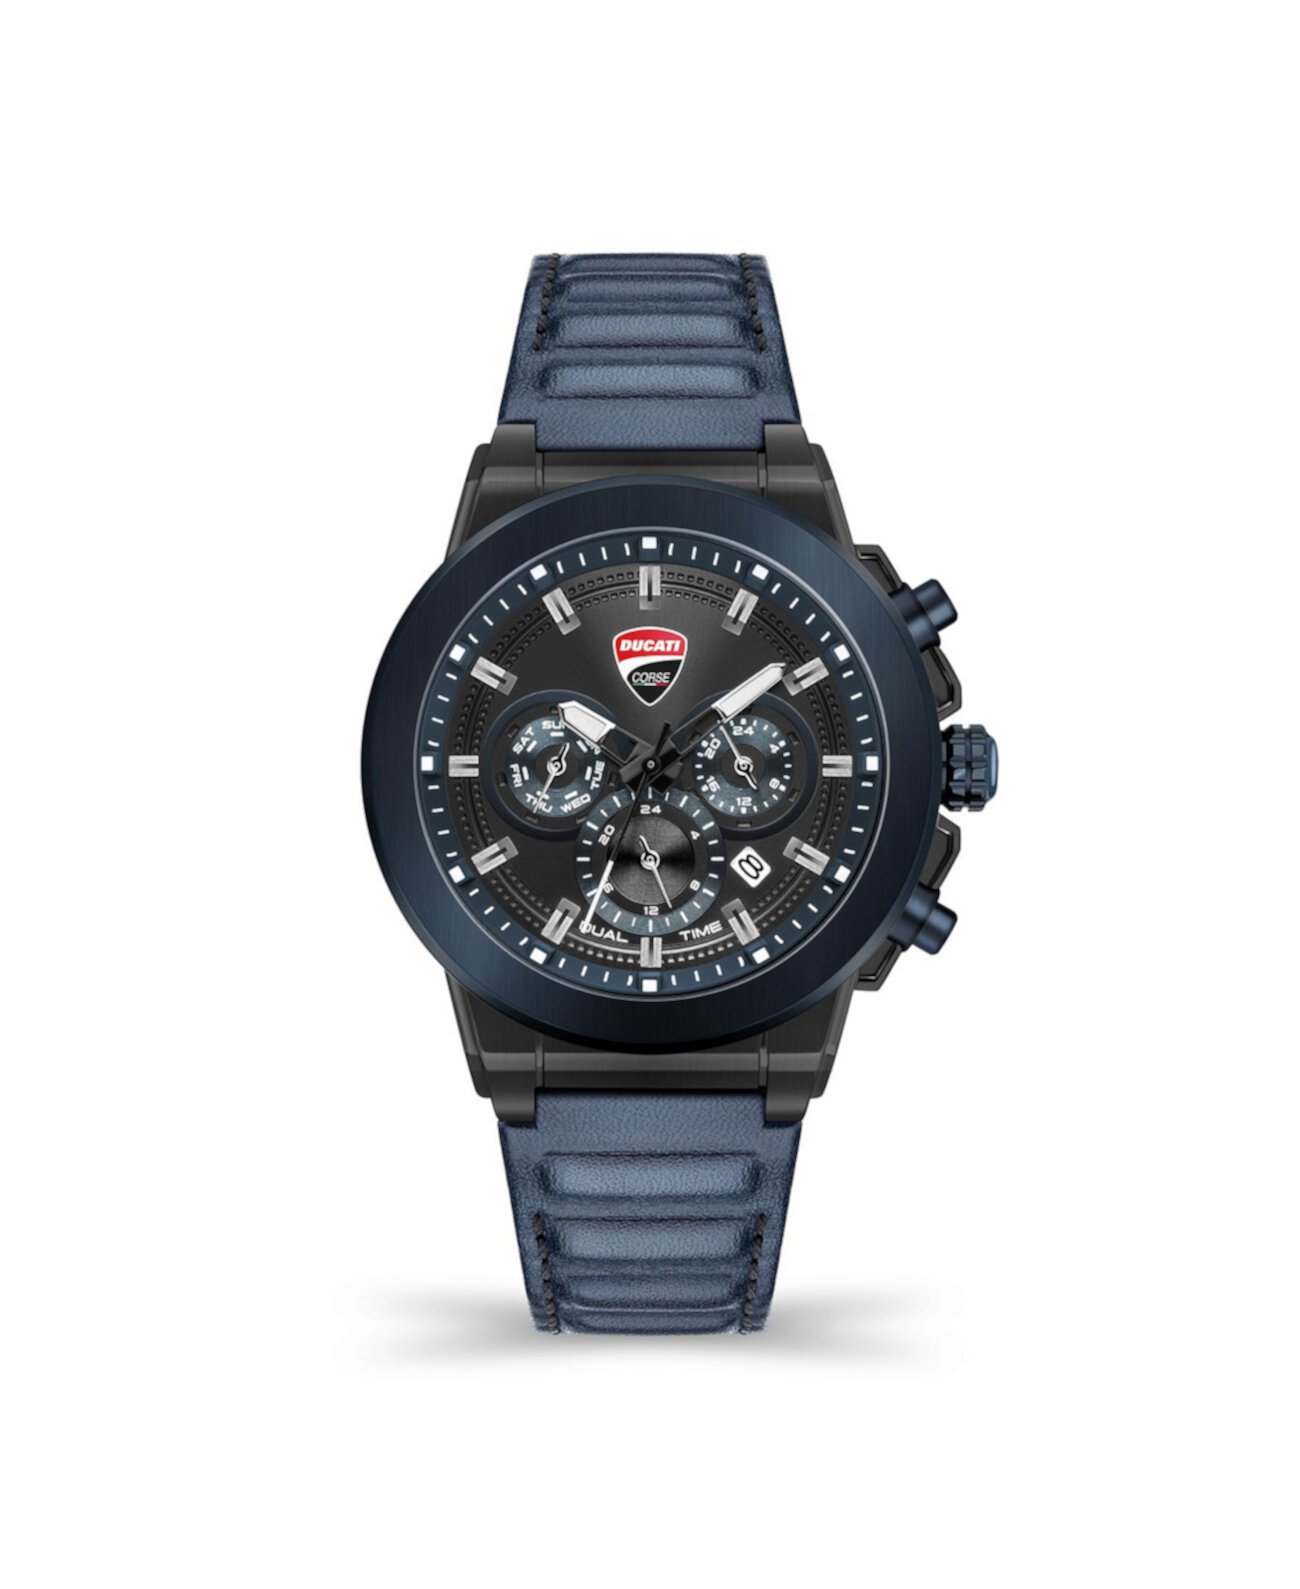 Мужские многофункциональные часы Campione с синим кожаным ремешком 45 мм Ducati Corse